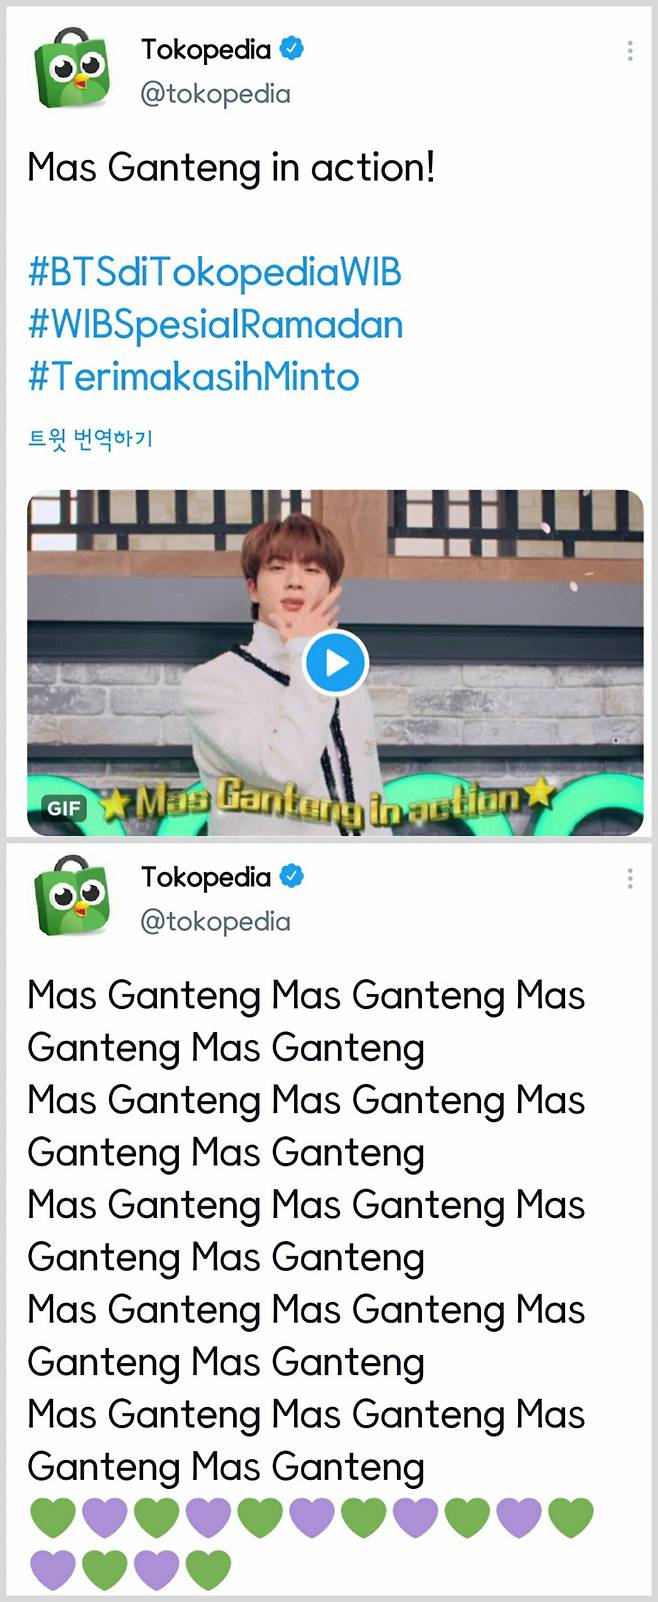 "Mas Ganteng♥" 방탄소년단 진, 달달 라이브+재치 인터뷰..인도네시아 뜨겁게 달군 '월드와이드 큐티'